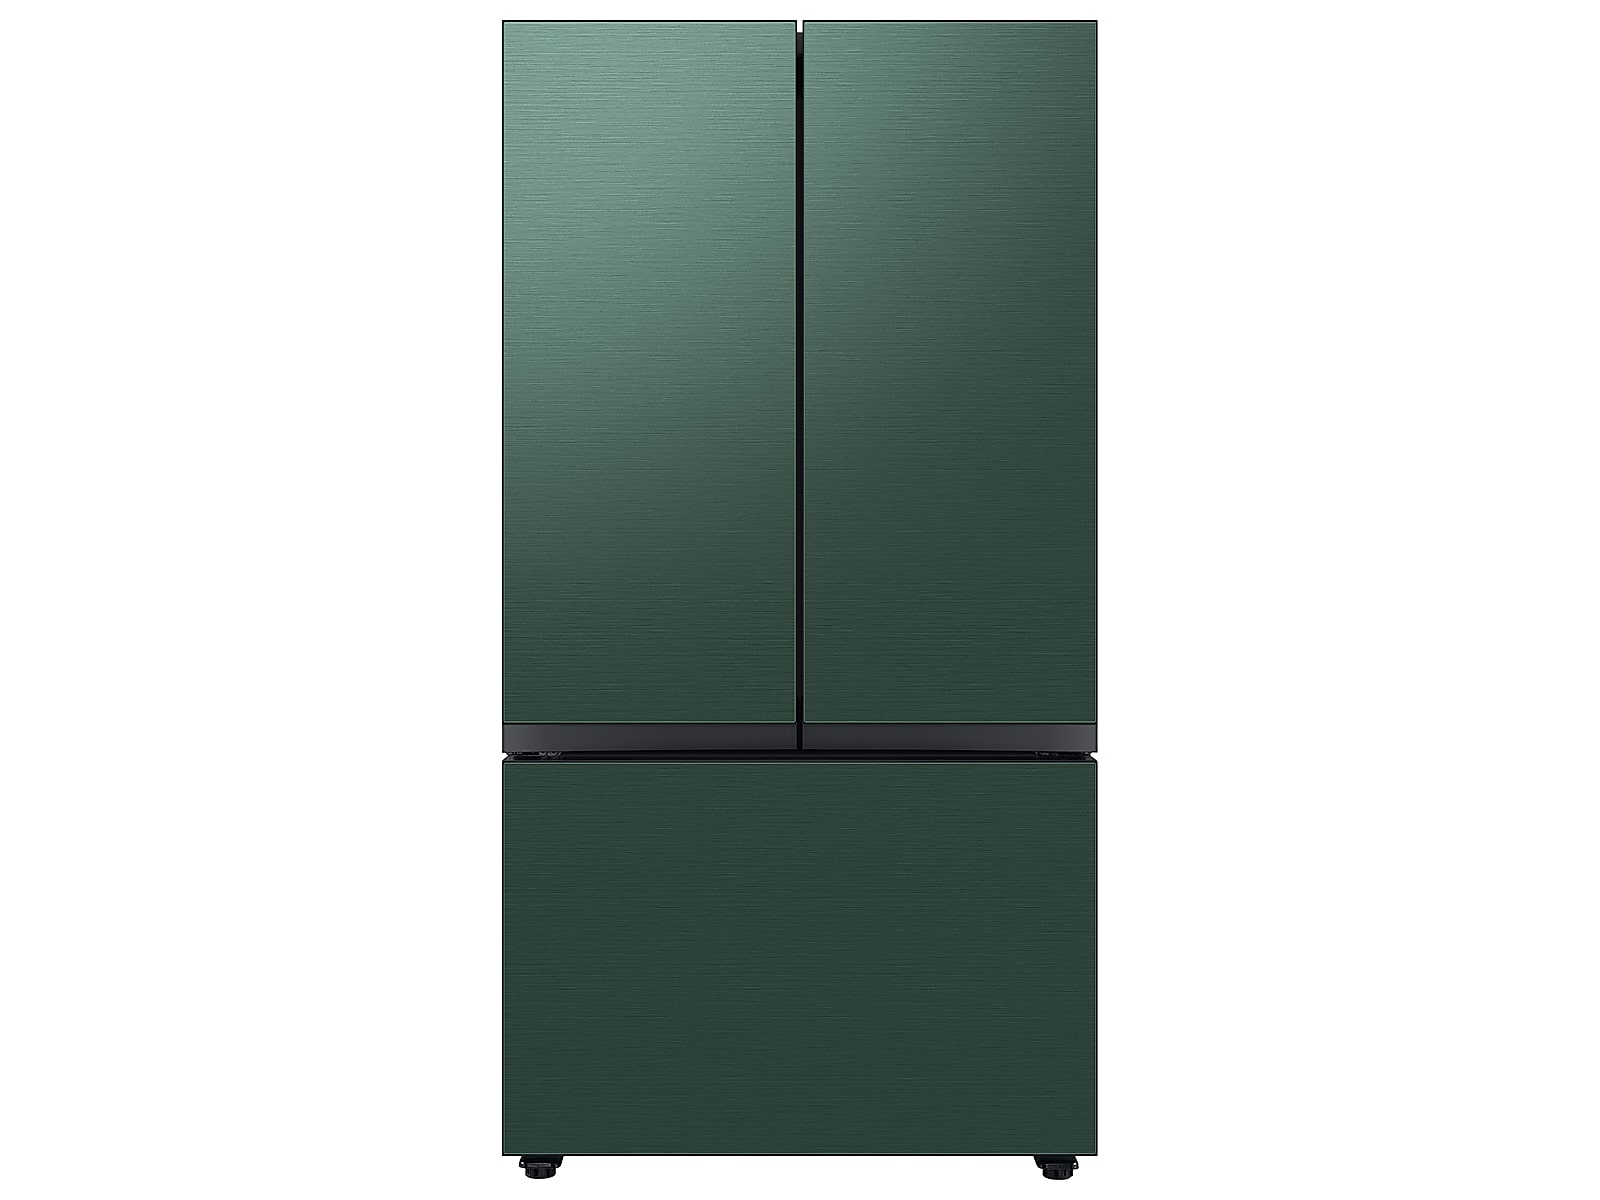 Samsung Bespoke 3-Door French Door Refrigerator (24 cu. ft.) with AutoFill Water Pitcher in Emerald in Green Steel(BNDL-1650464486044)